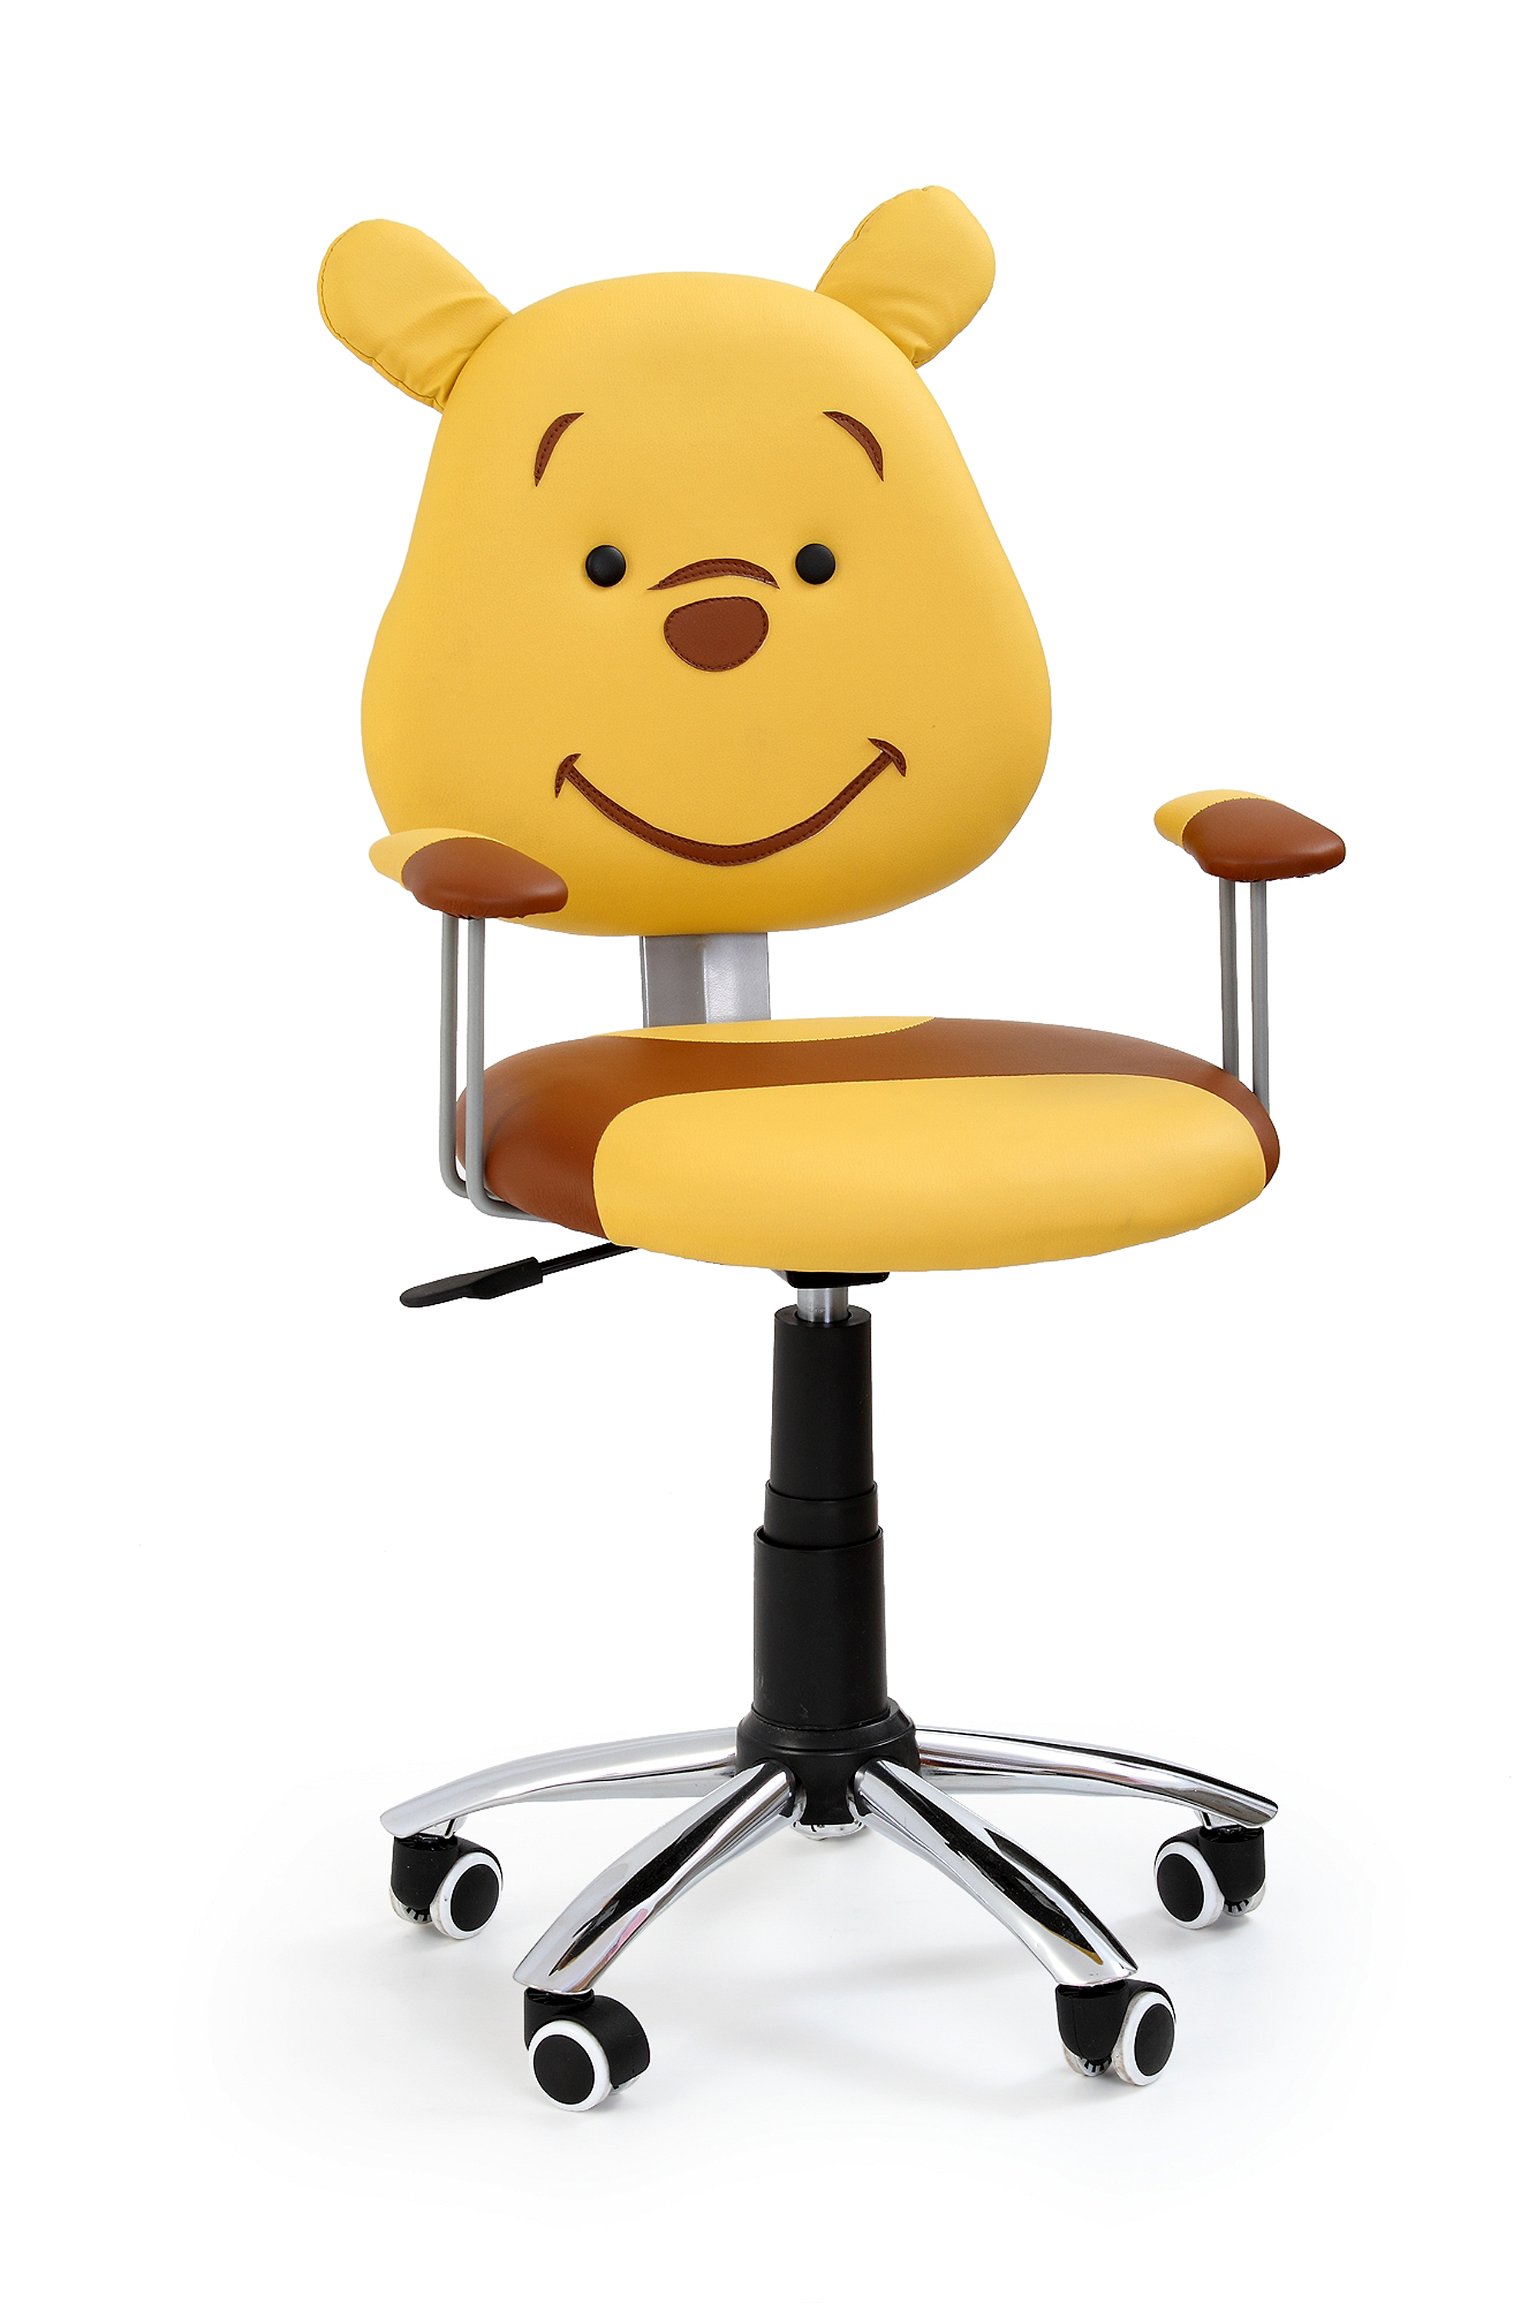 Vaikiška kėdė KUBUŚ, geltona/ruda